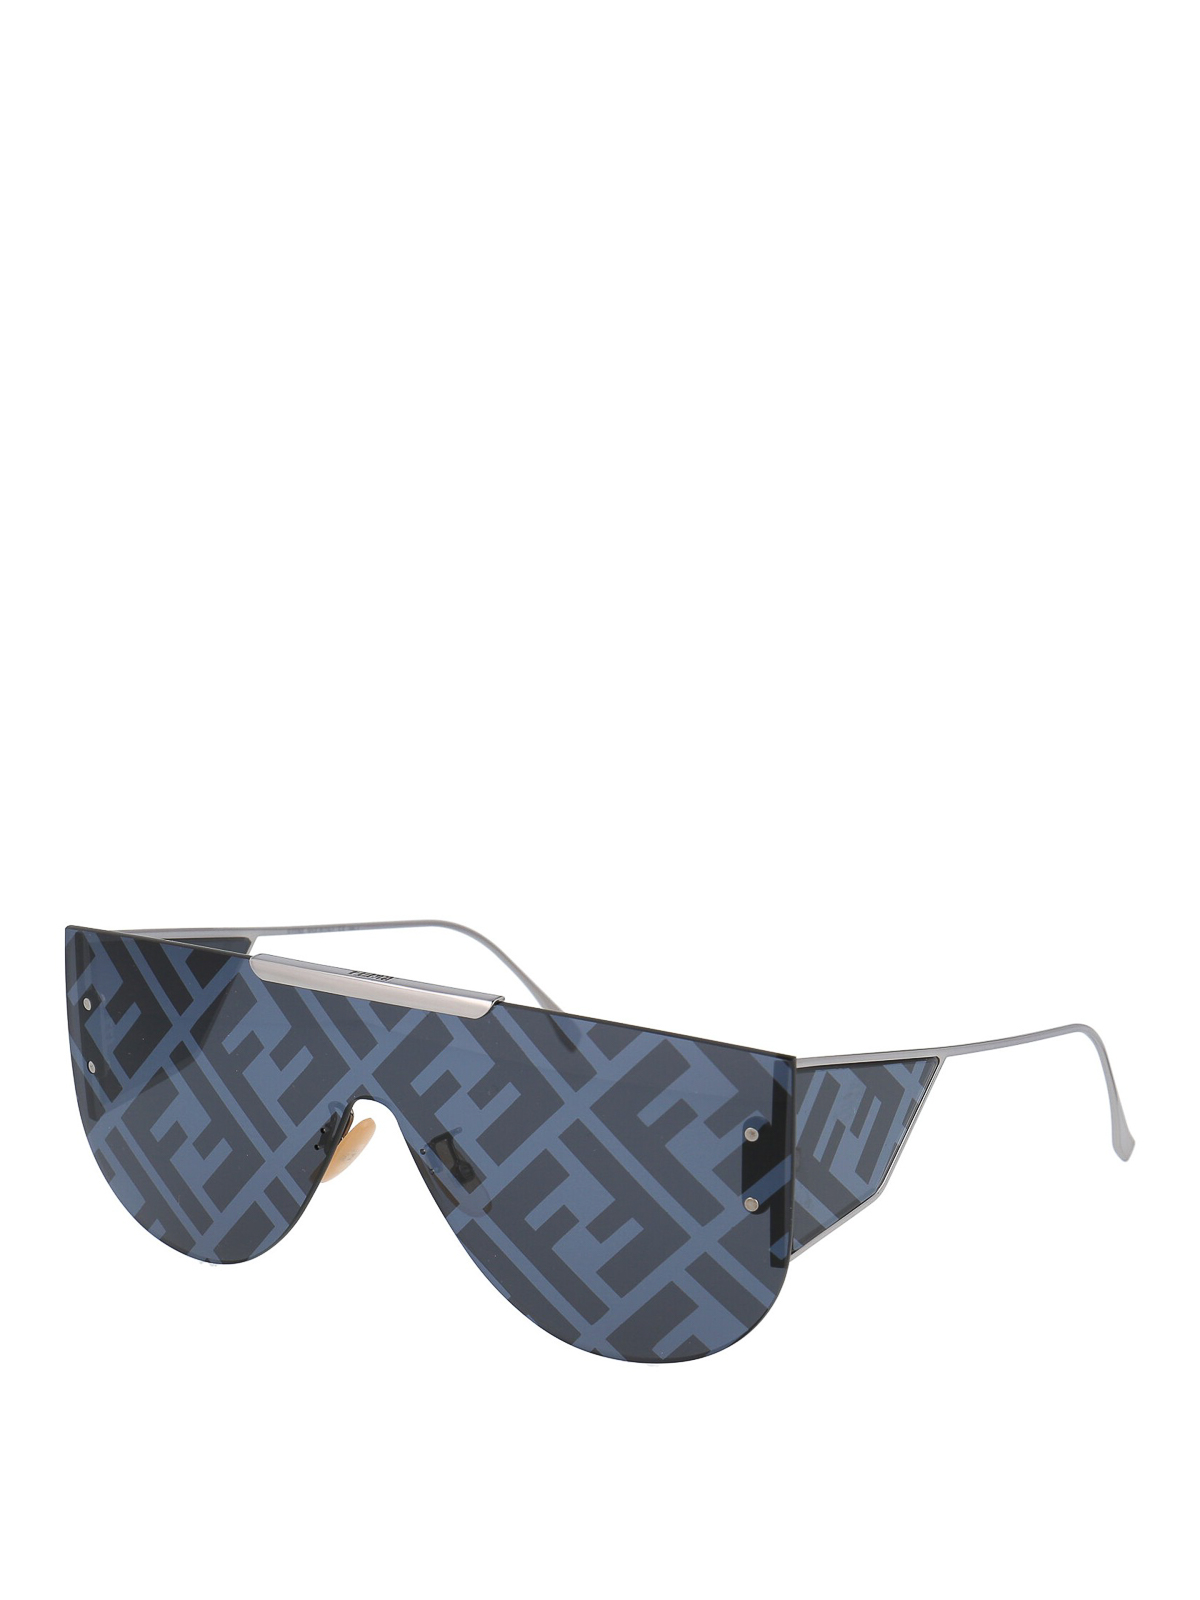 Sunglasses Fendi - FF printed lens mask sunglasses - FFM0093SGUAMD